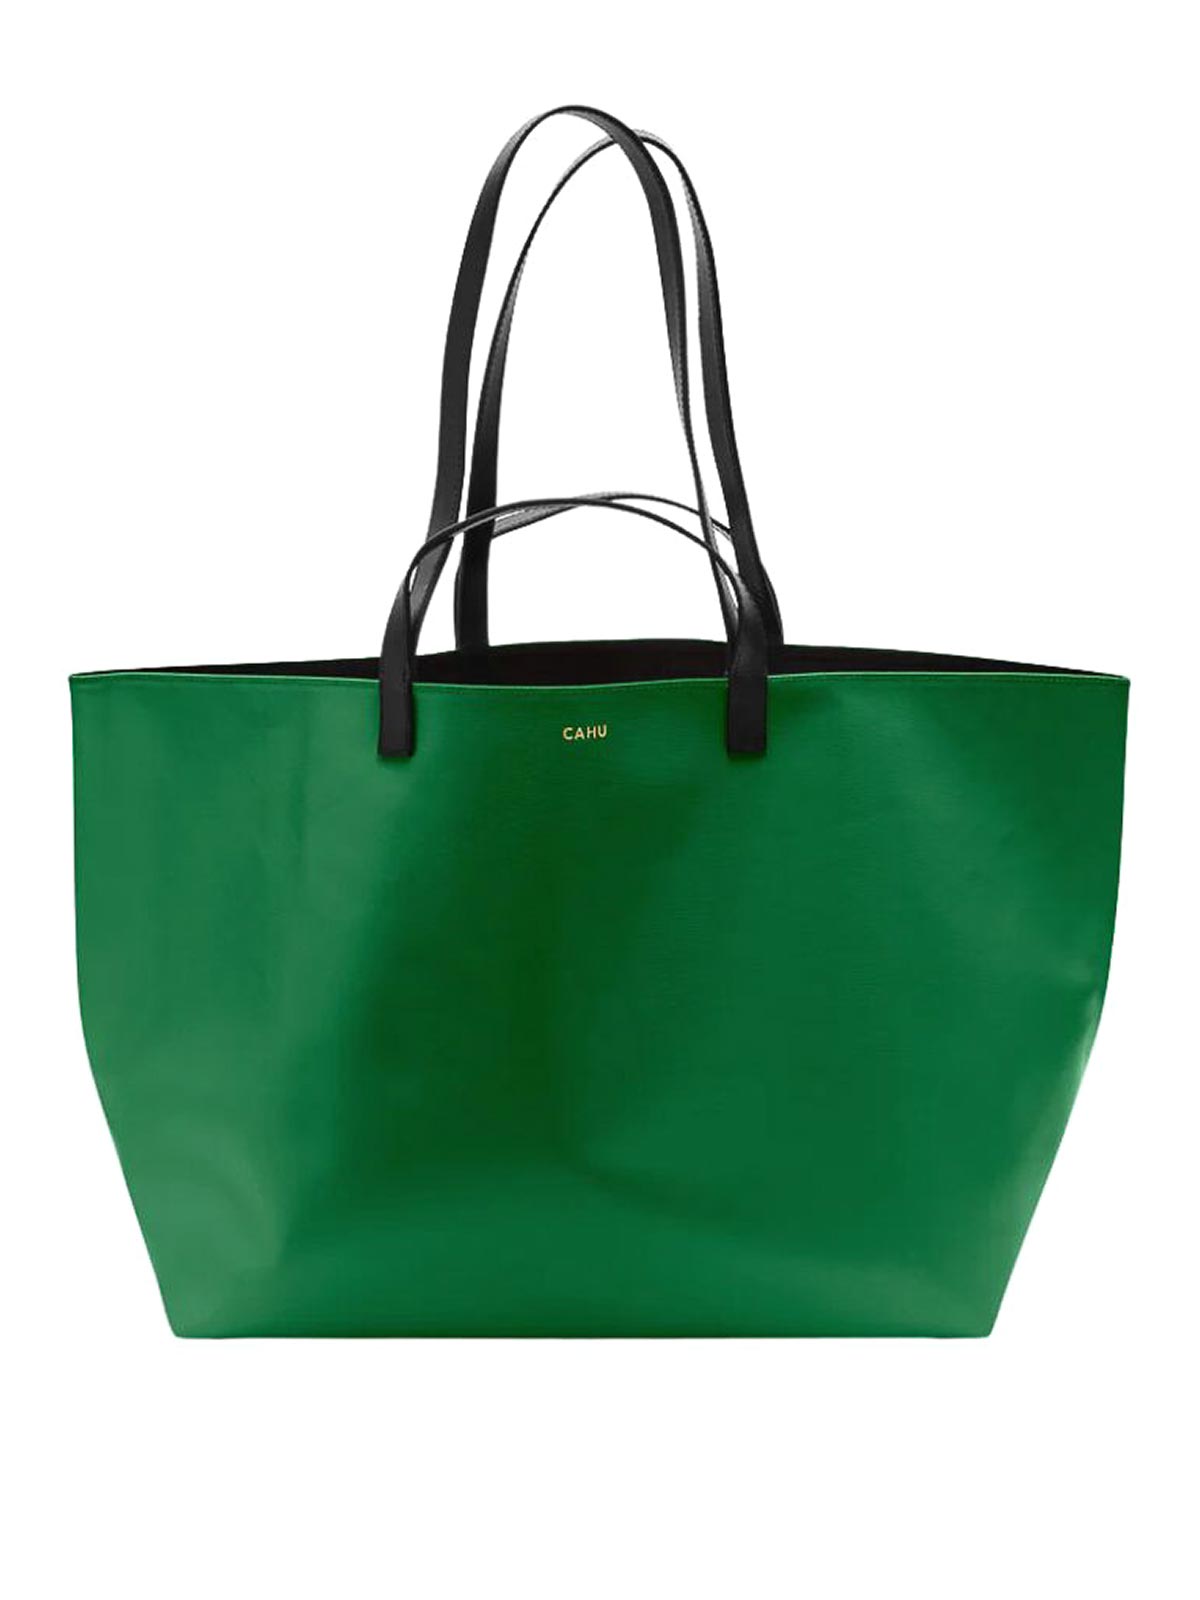 Cahu Tote Bag In Green